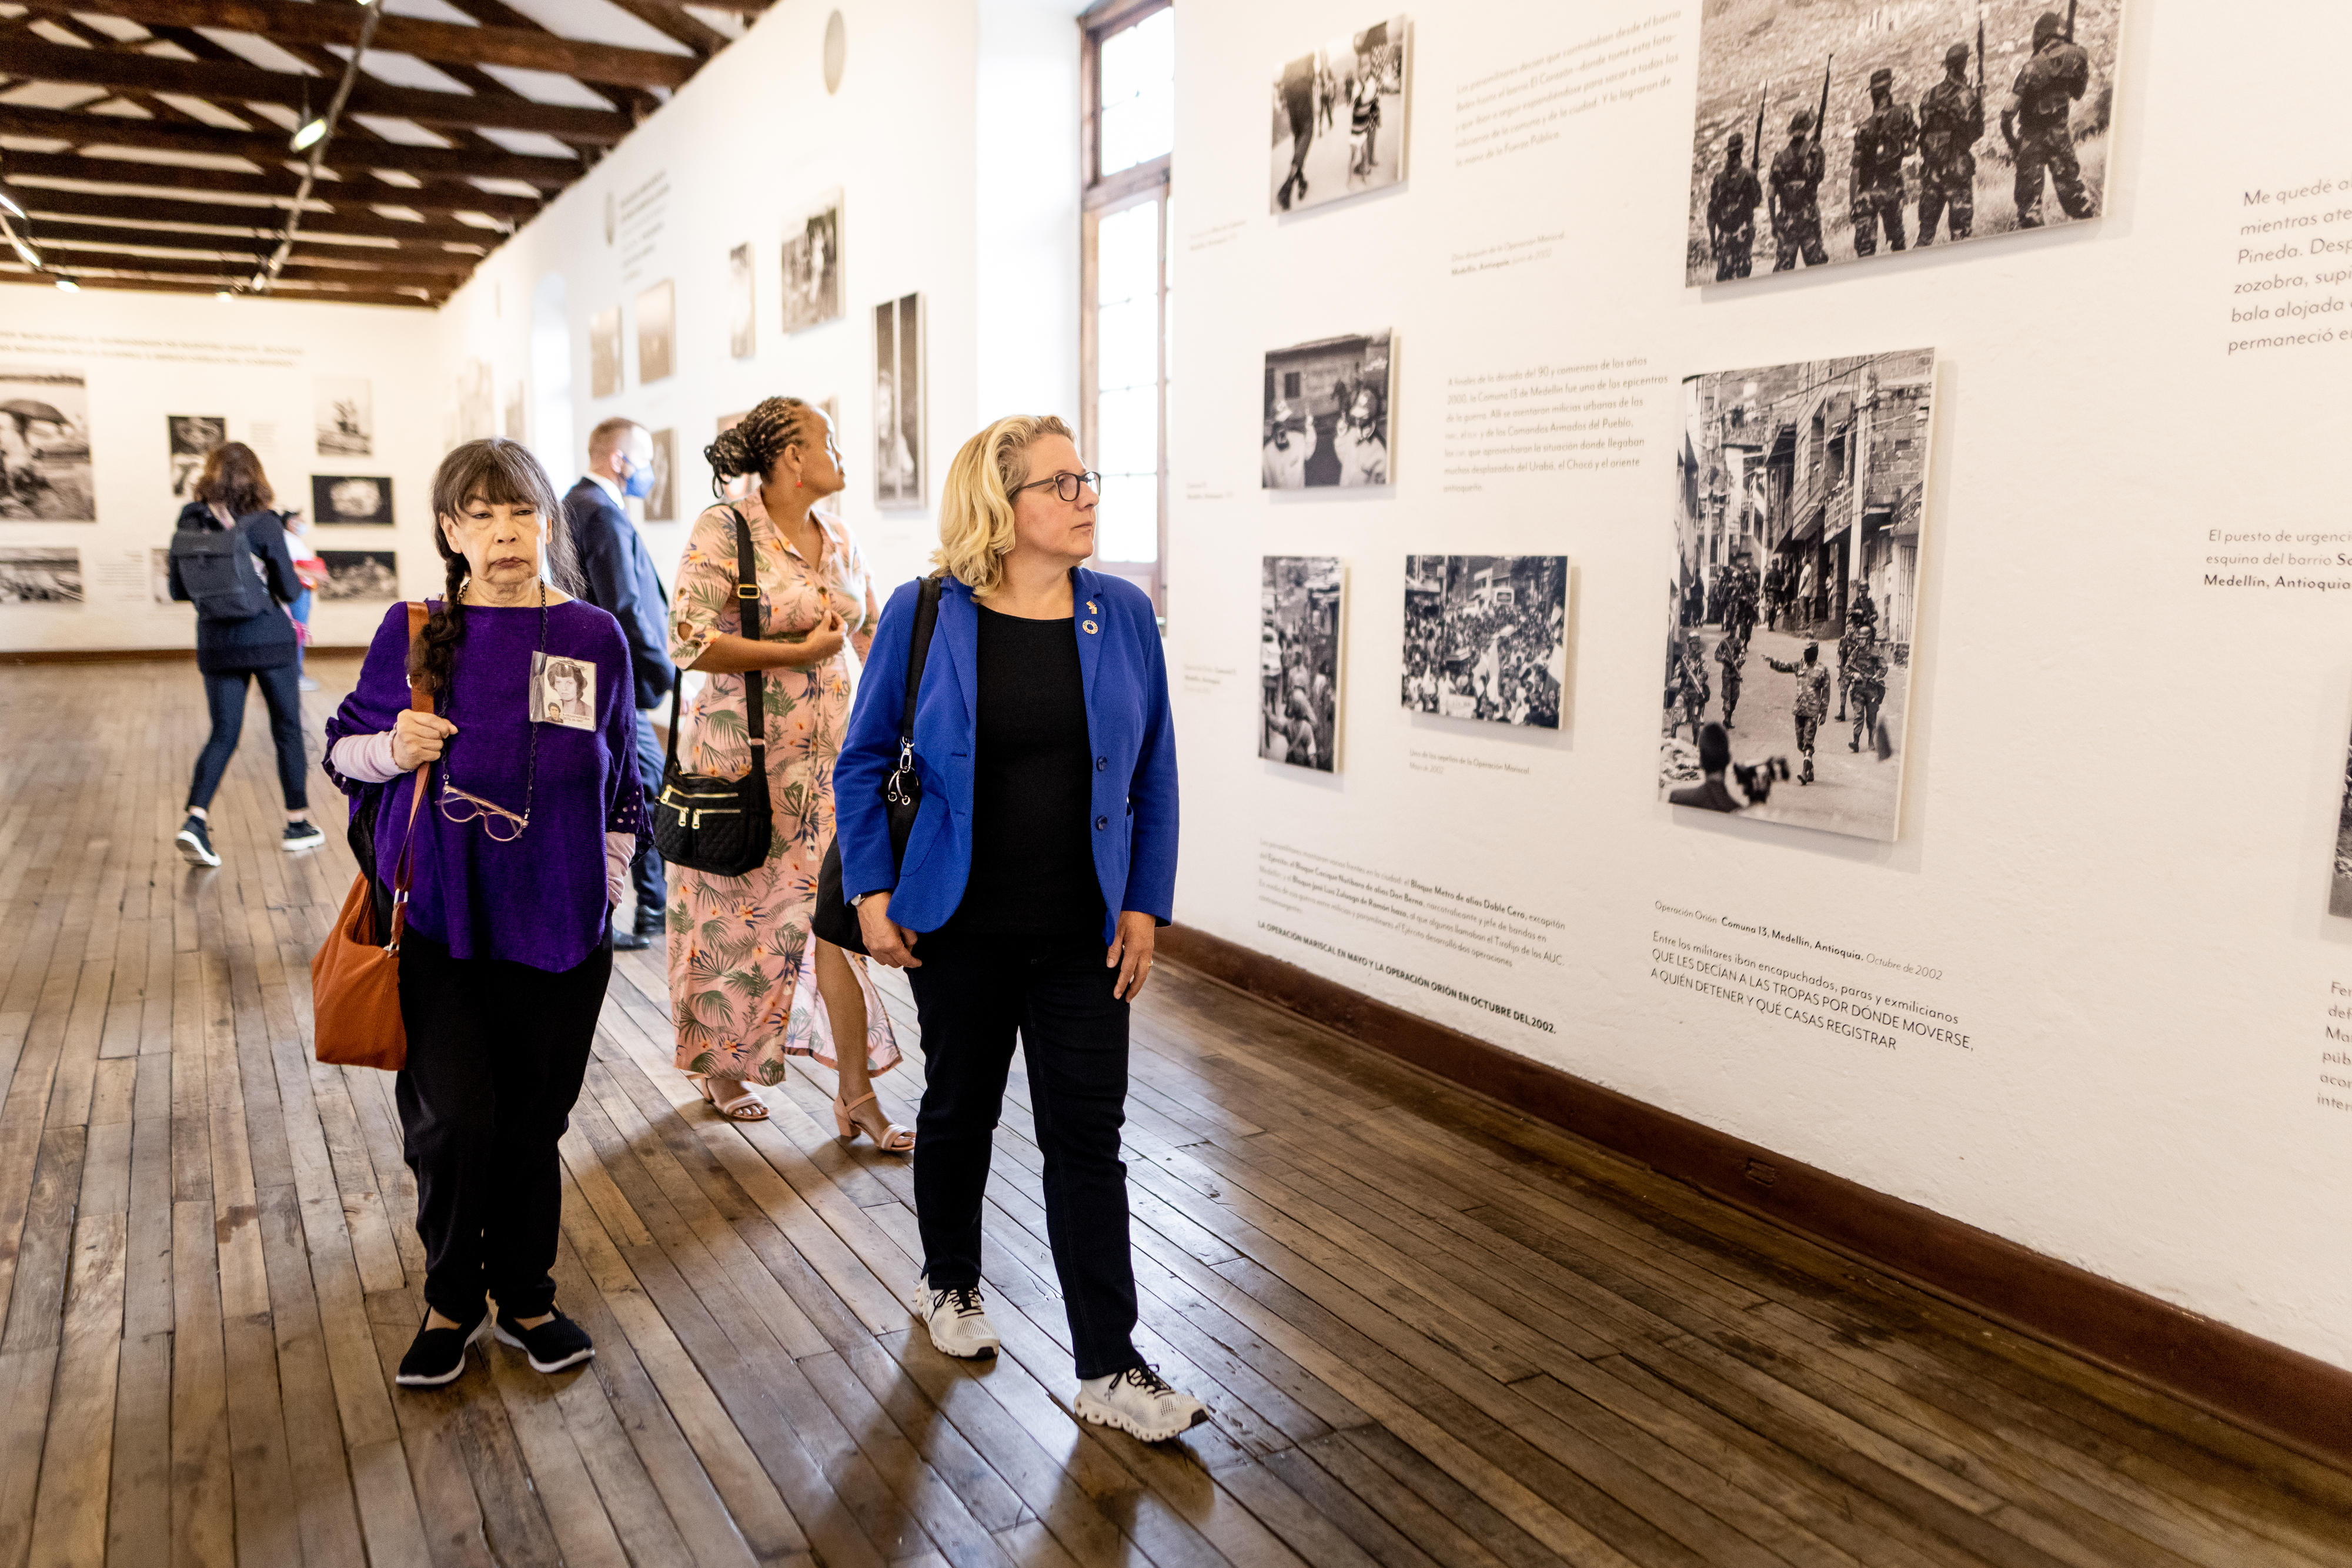 Besuch der Foto-Ausstellung "El Testigo" (Der Zeuge) im Kloster San Augustín in Bogotá, die einen Ausschnitt des bewaffneten Konflikts in Kolumbien dokumentiert